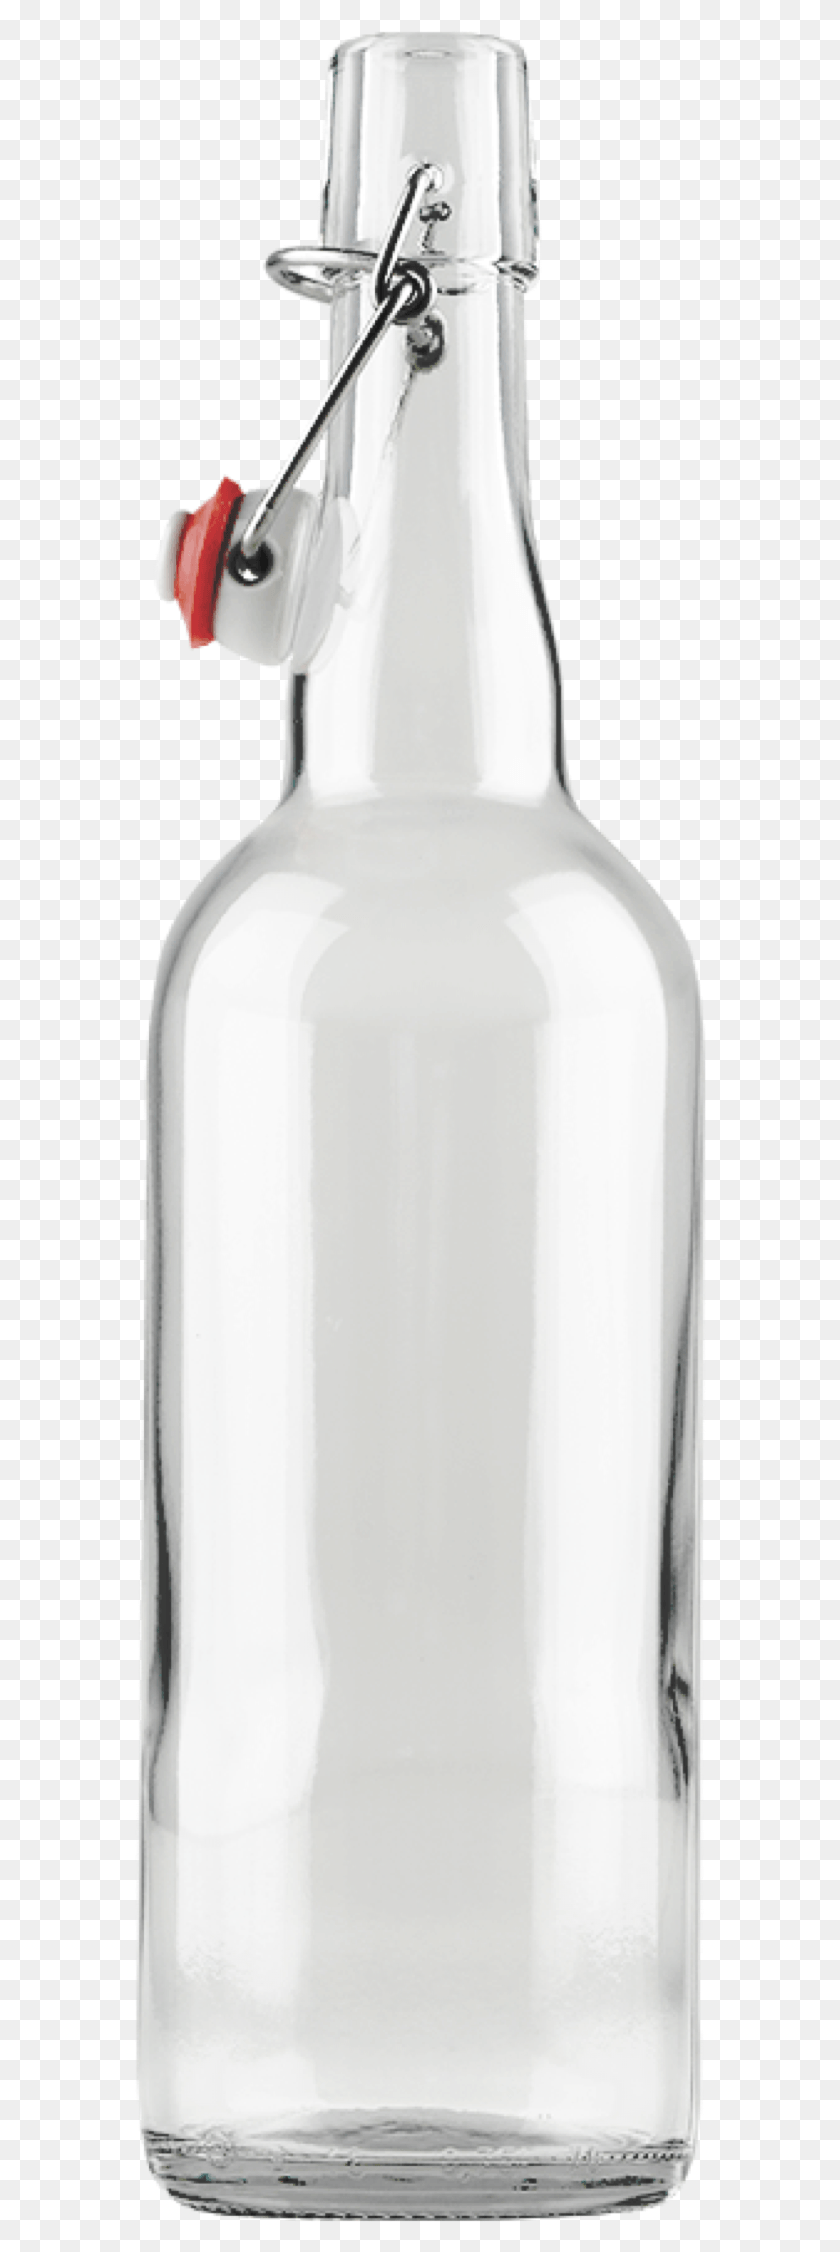 572x2192 Прозрачные Бутылки С Прозрачной Крышкой, Стеклянная Бутылка, Банка, Молоко, Напитки Png Скачать